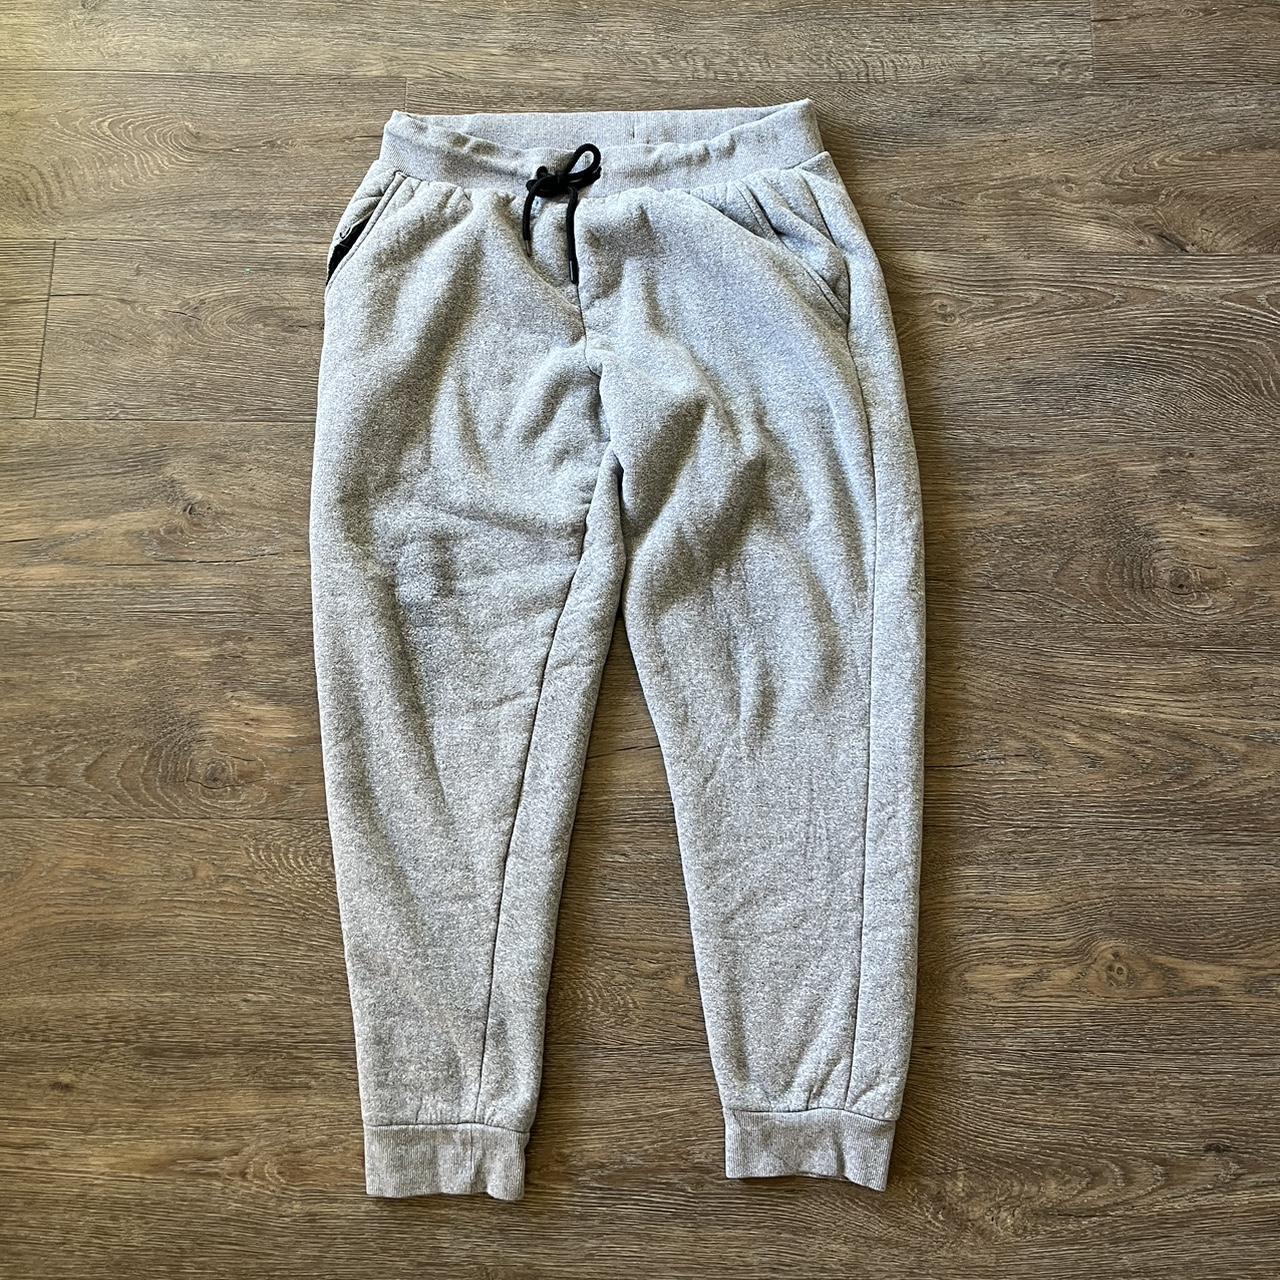 Men’s Grey Soft Lined Sweatpants Size L Condition :... - Depop